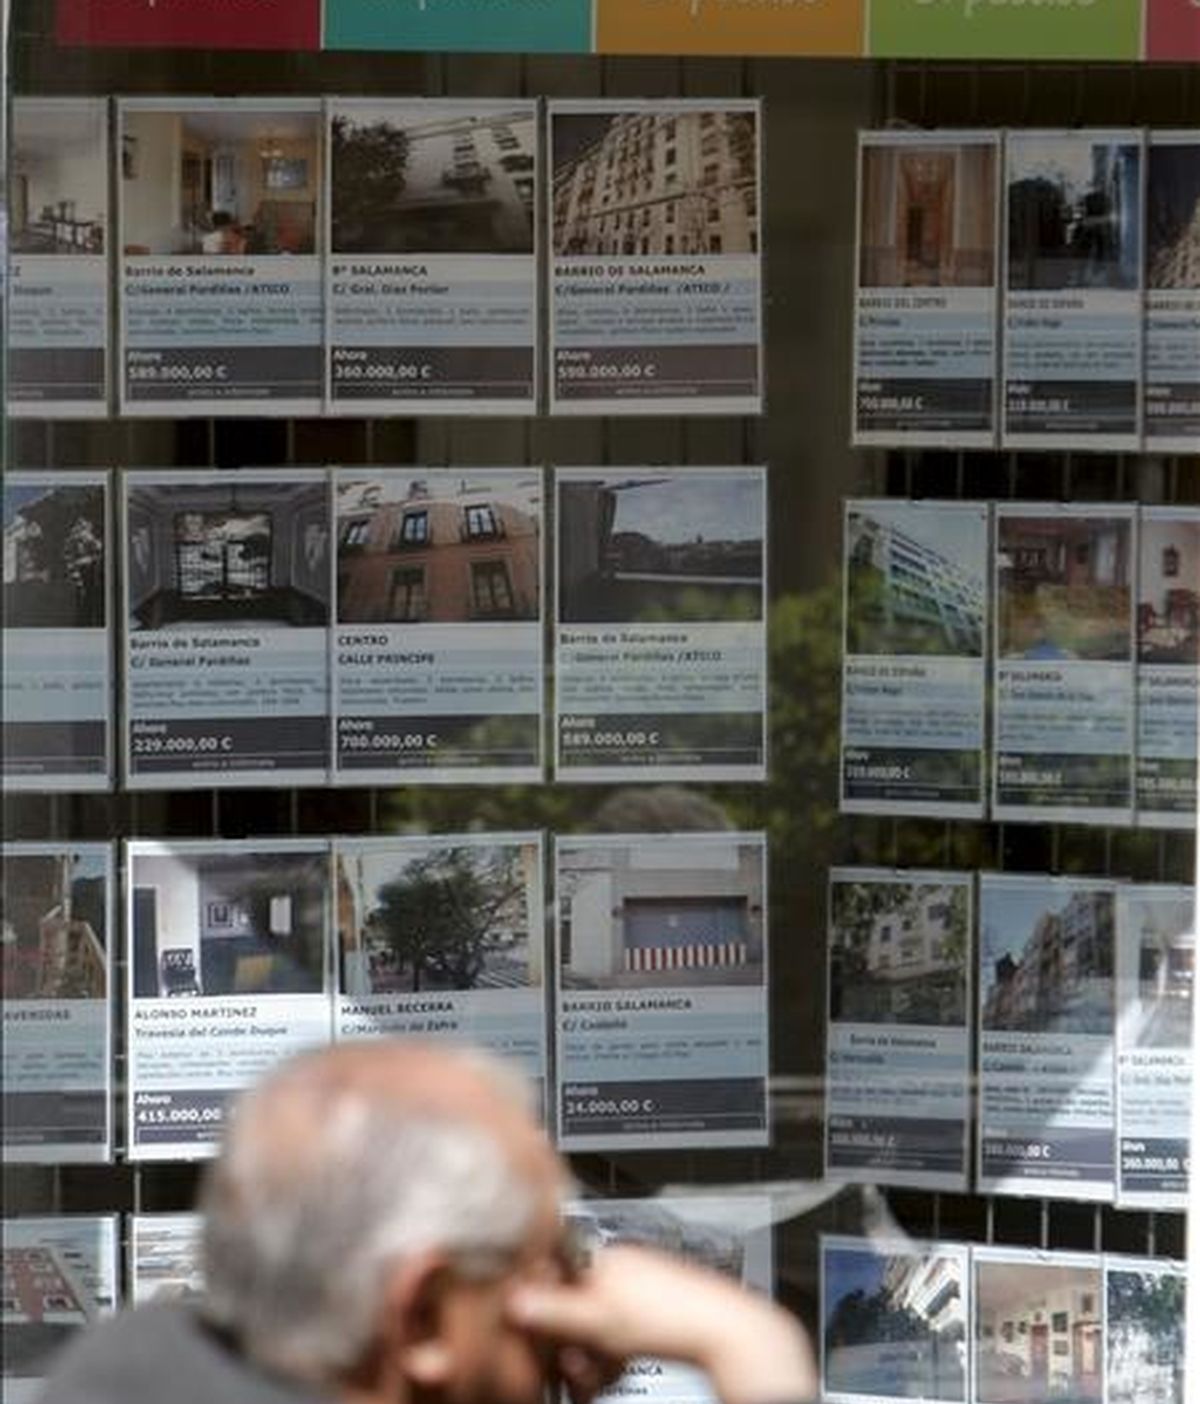 Un hombre sentado junto a una inmobiliaria que muestra en su escaparate las numerosas ofertas de venta y alquiler de inmuebles, en Madrid. EFE/Archivo